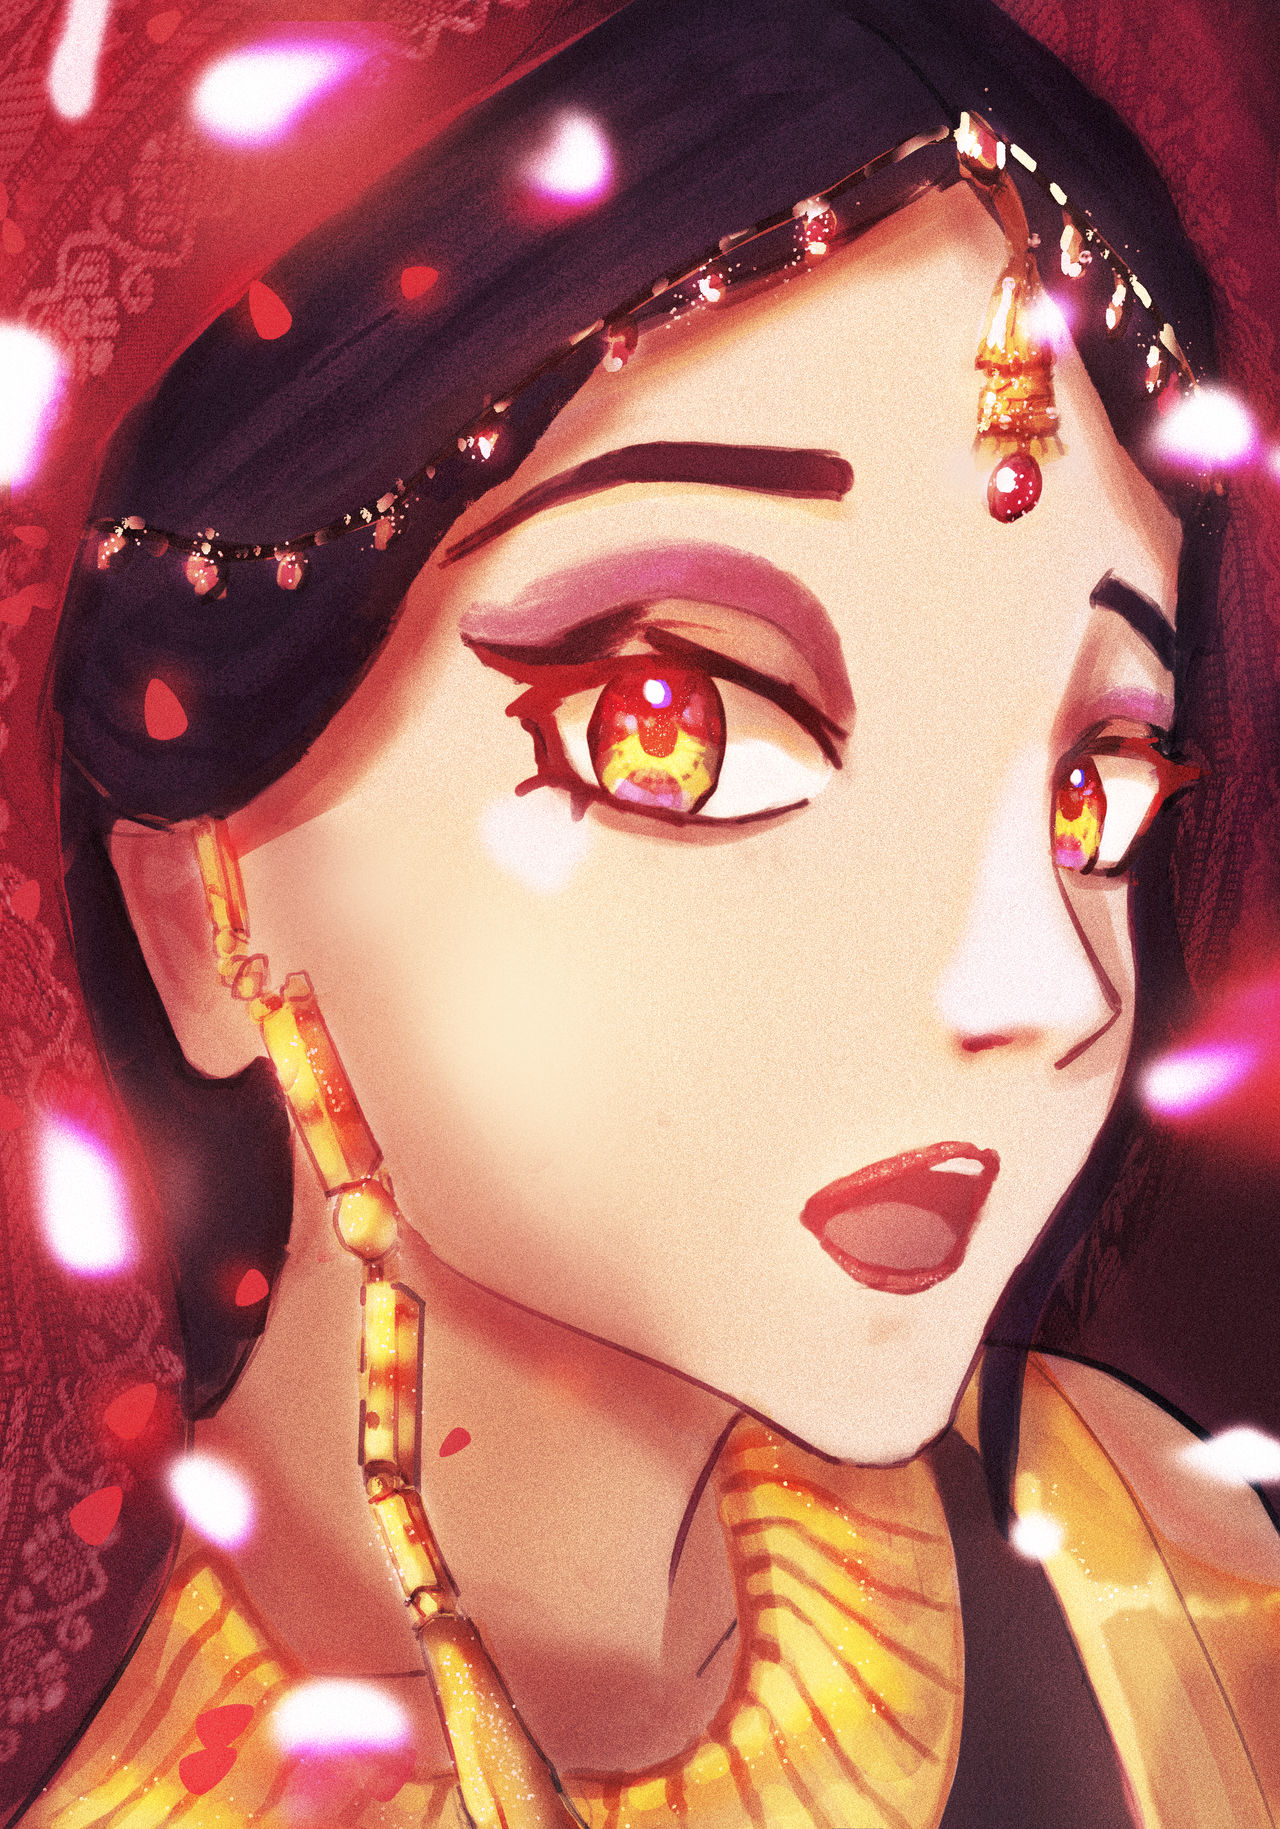 Indian Anime Girl10 by NemesisRJ on DeviantArt